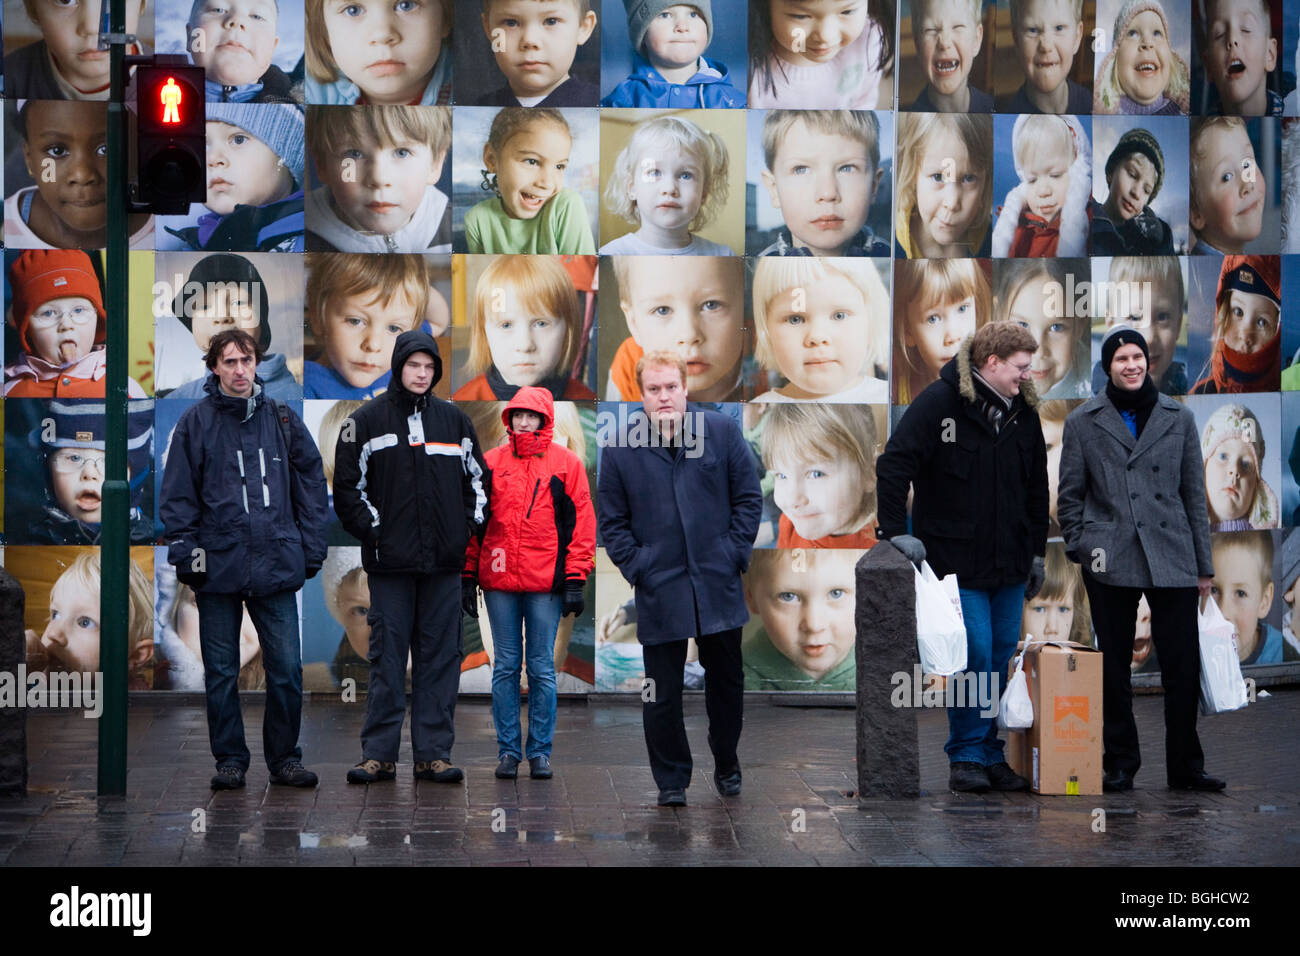 Les gens qui attendent pour traverser la rue Laekjargata. Photos de jeunes enfants islandais dans l'arrière-plan. Le centre-ville de Reykjavik, Islande. Banque D'Images